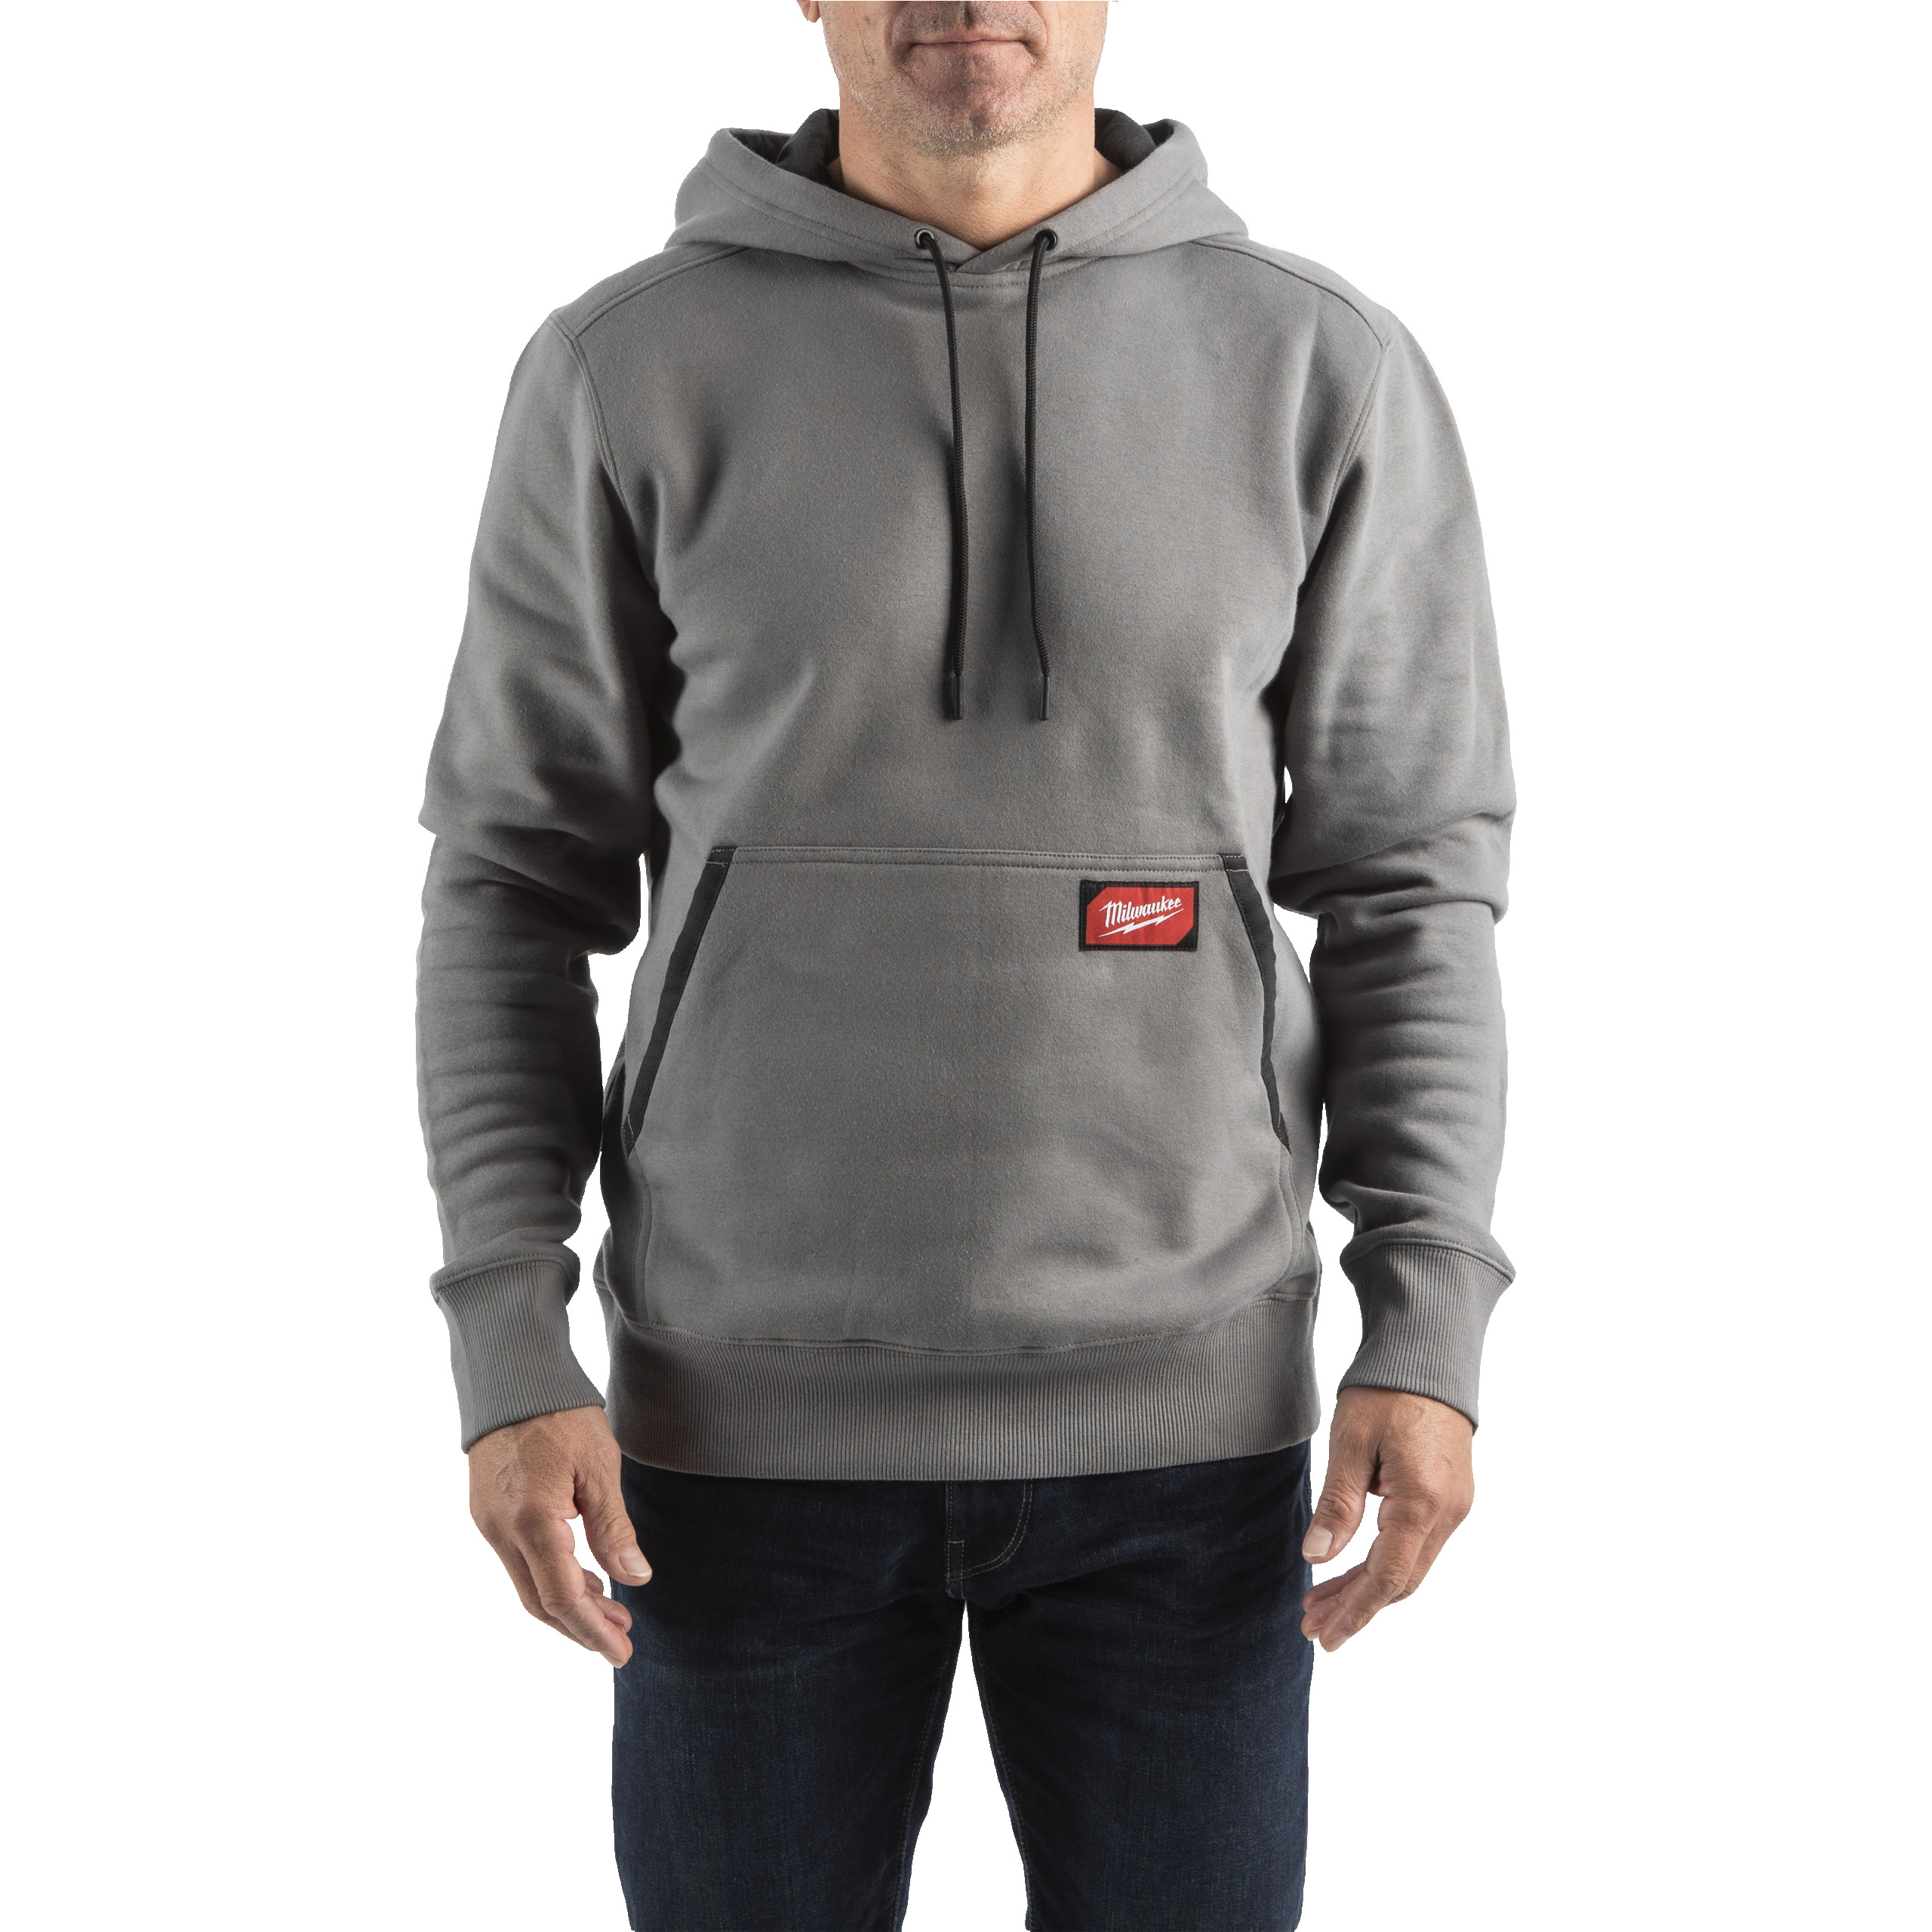 leichter Arbeits-Kapuzen-Pullover grau (WHMWGR-XL)